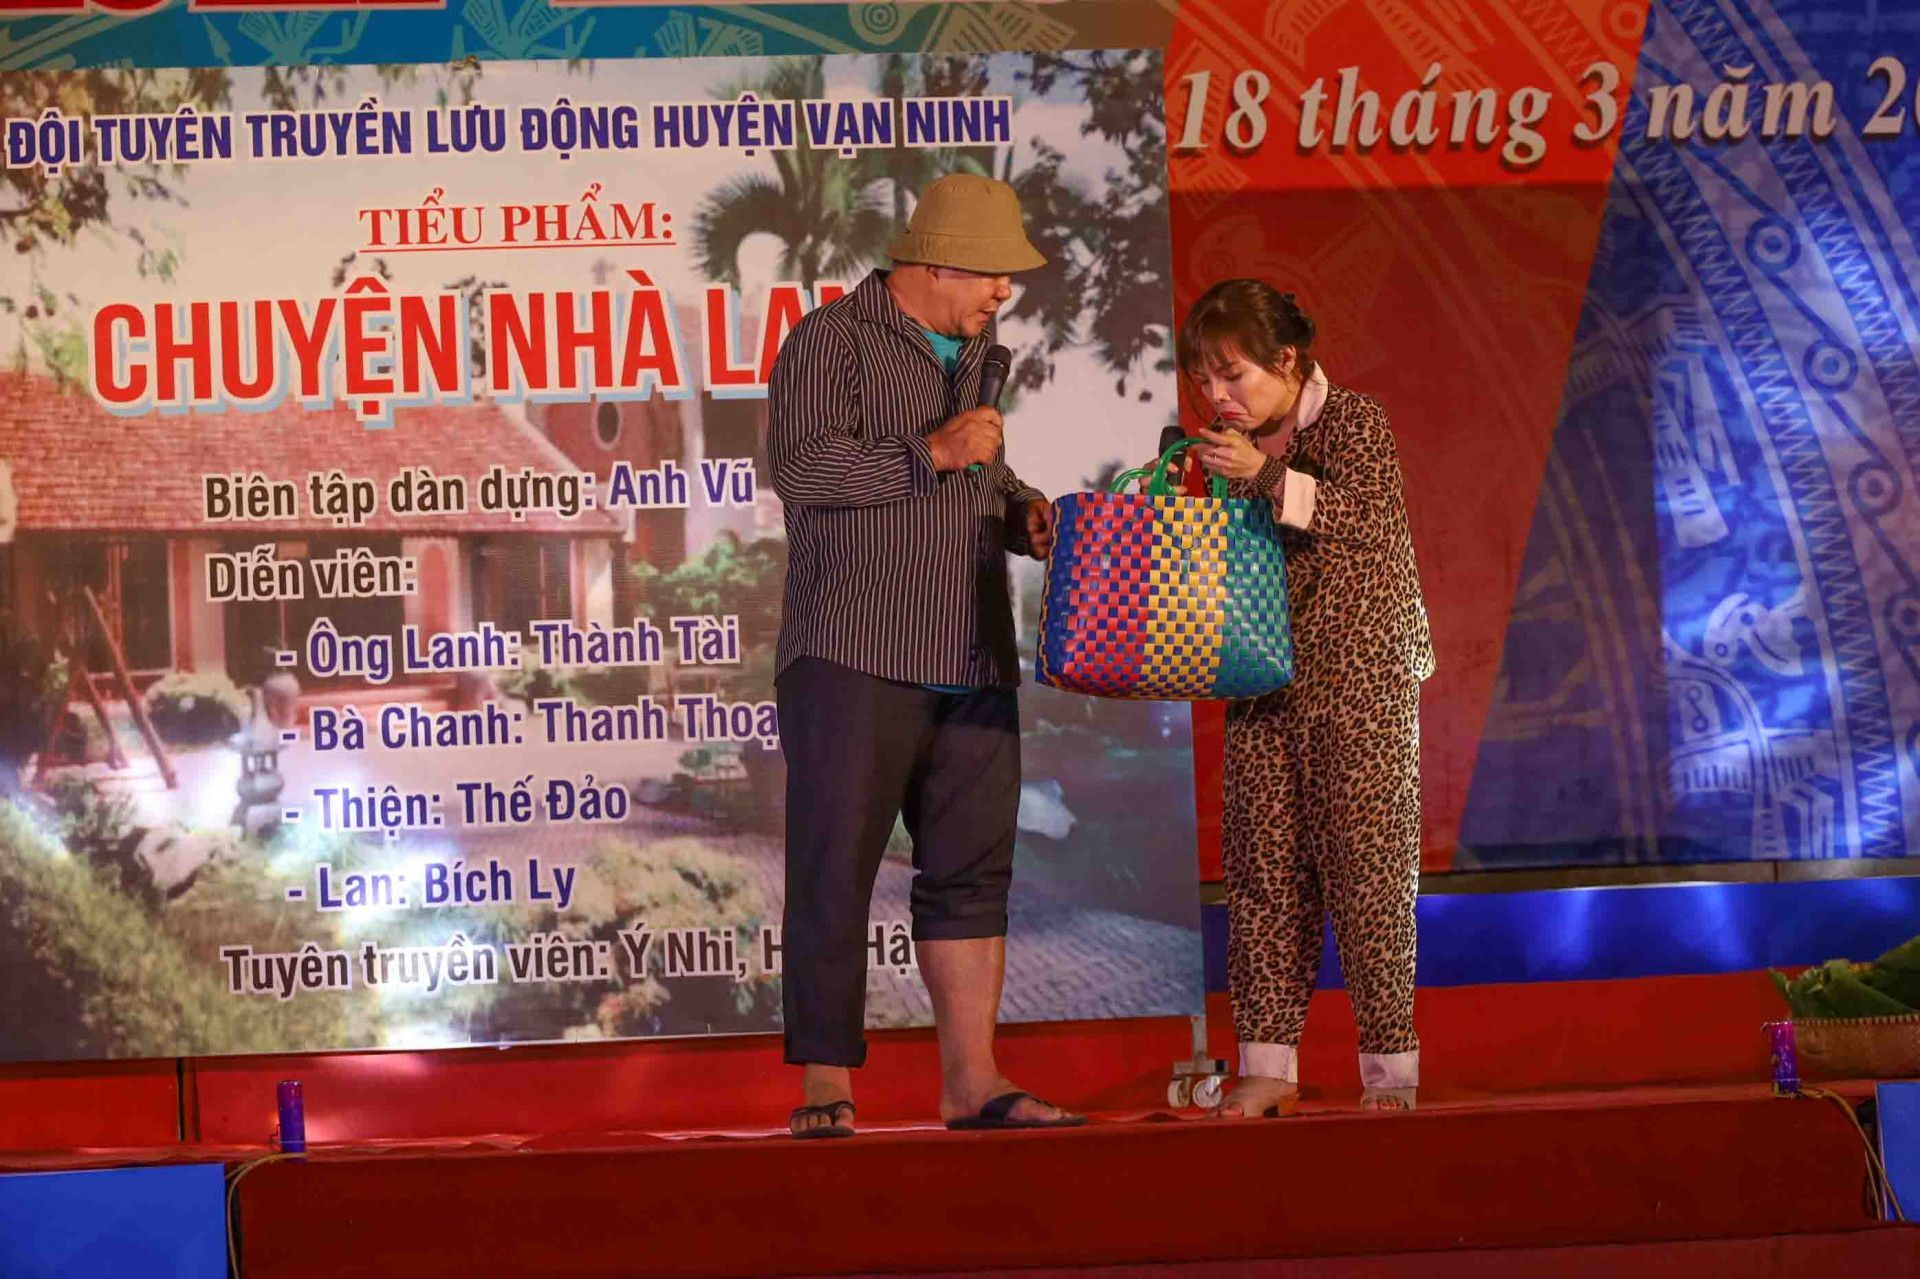 Đội tuyên truyền lưu động huyện Vạn Ninh đưa khán giả đến với tiểu phẩm Chuyện nhà Lanh đề cập đến vấn đề an toàn vệ sinh thực phẩm và trồng rau an toàn. 